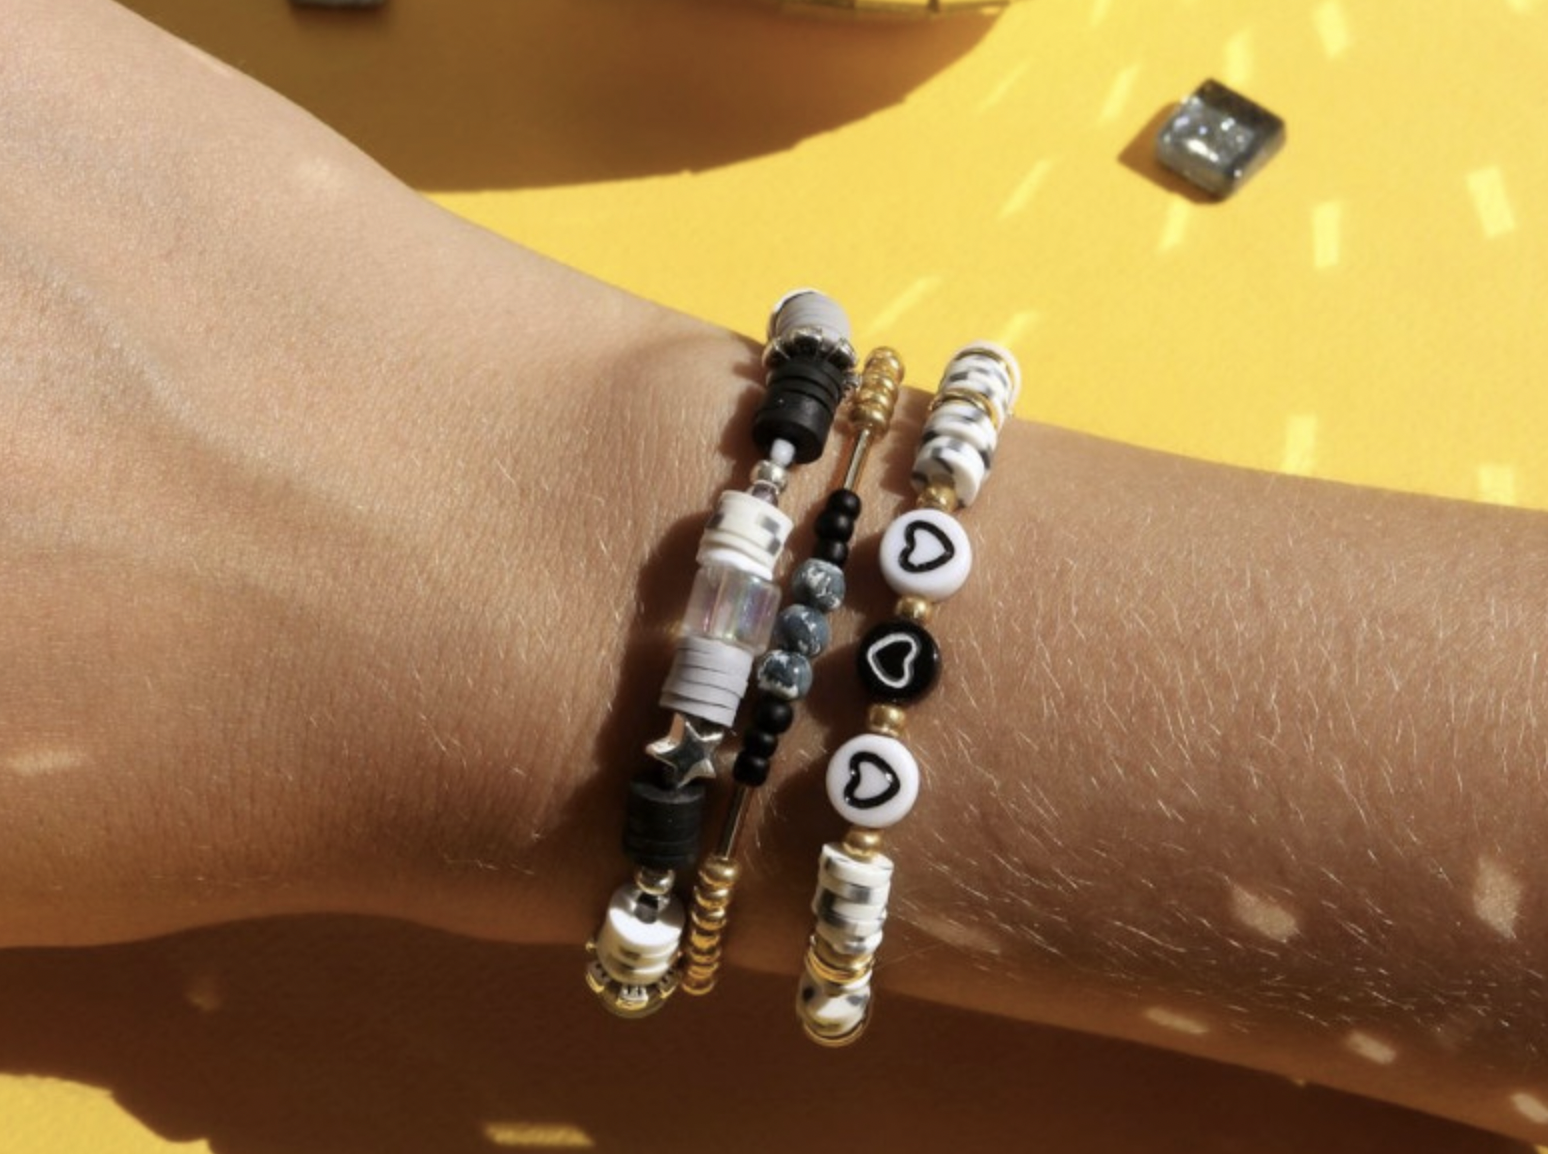 Acheter KIT MKMI - Mes bracelets en perles Heishi En ligne